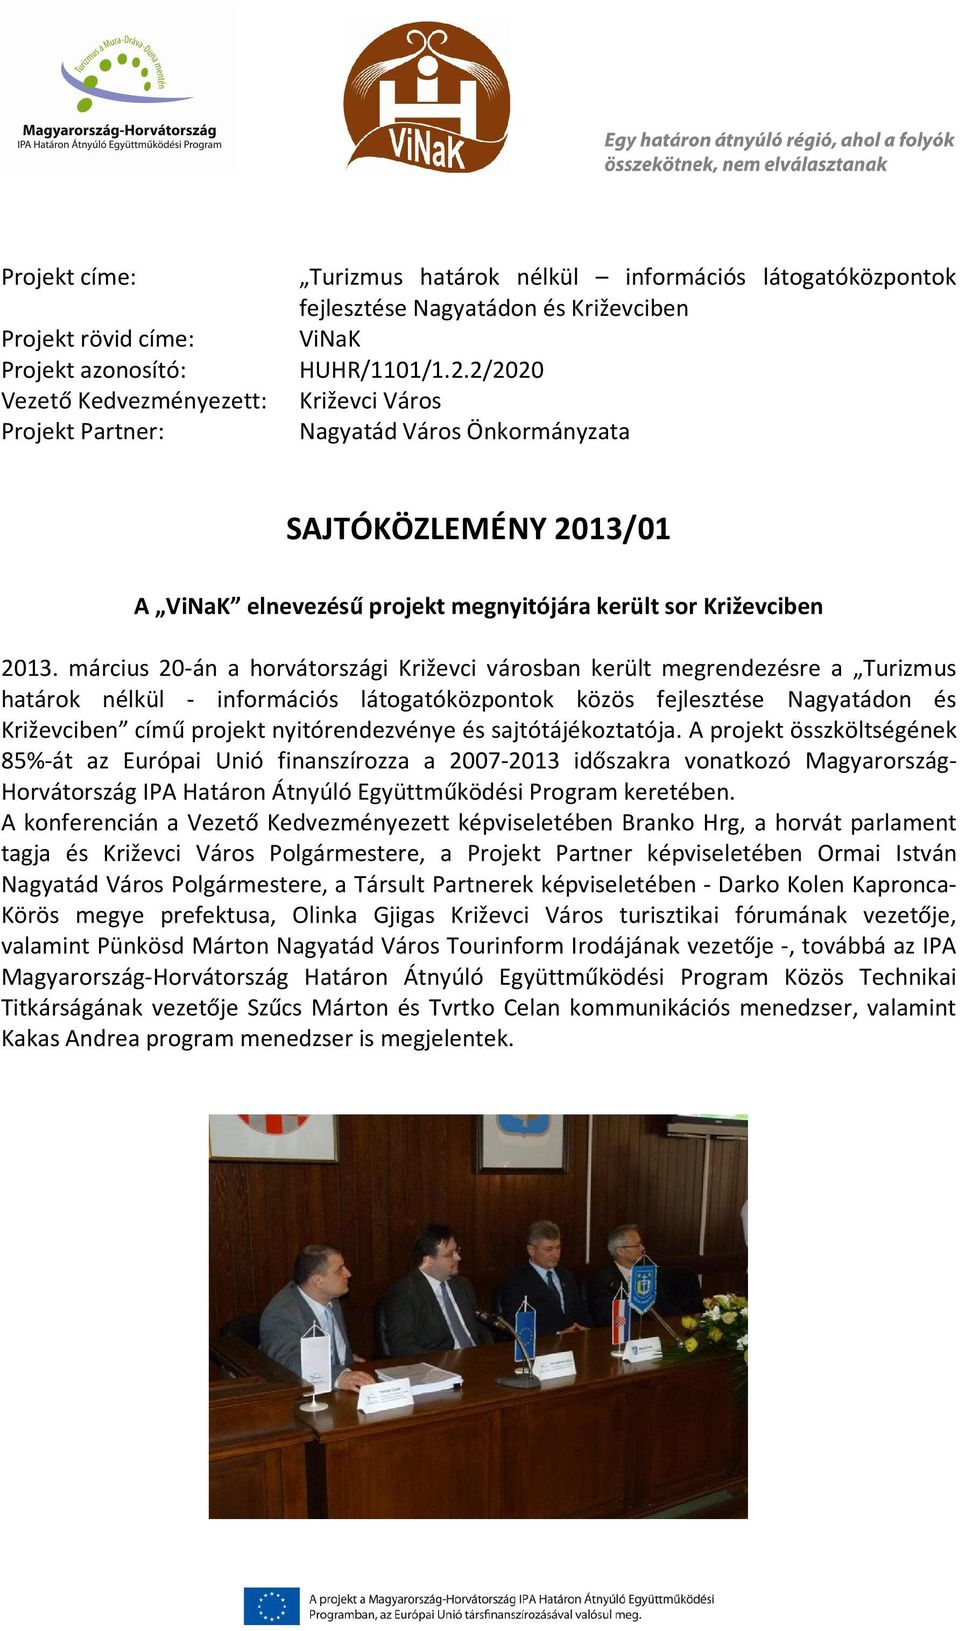 március 20-án a horvátországi Križevci városban került megrendezésre a Turizmus határok nélkül - információs látogatóközpontok közös fejlesztése Nagyatádon és Križevciben című projekt